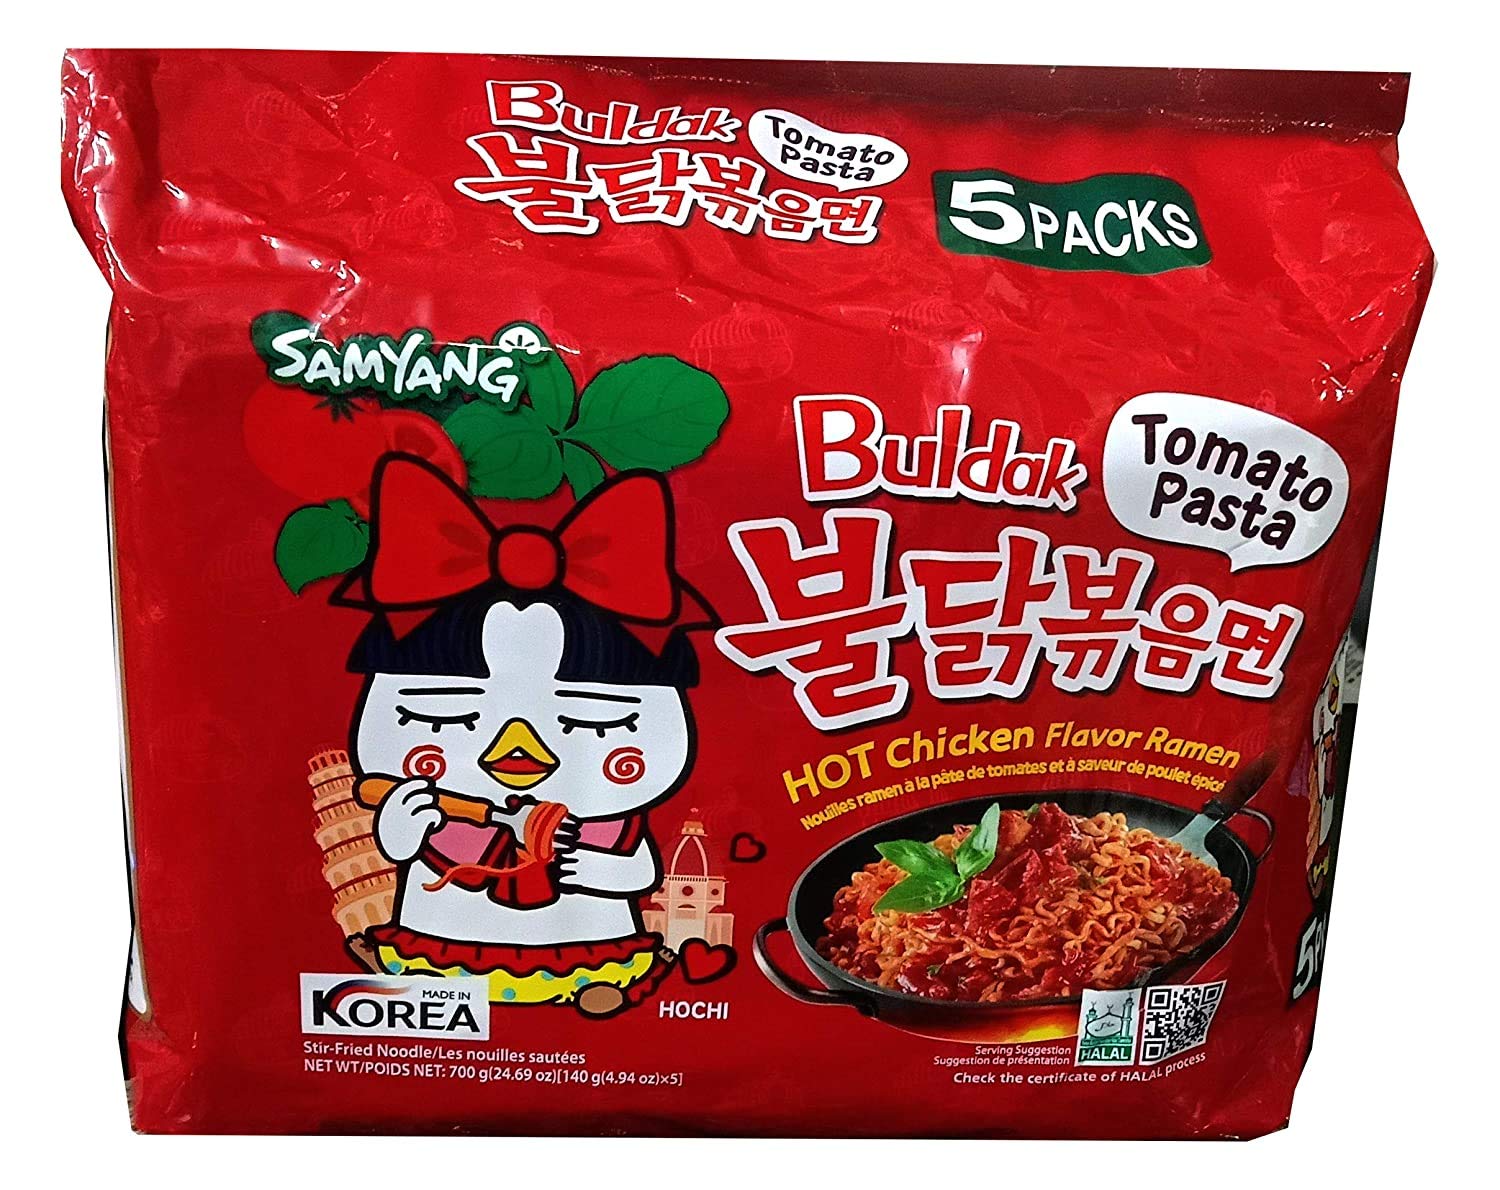 Samyang Buldak Tomato Pasta Flavored Stir-Fried Noodles 4.94 oz